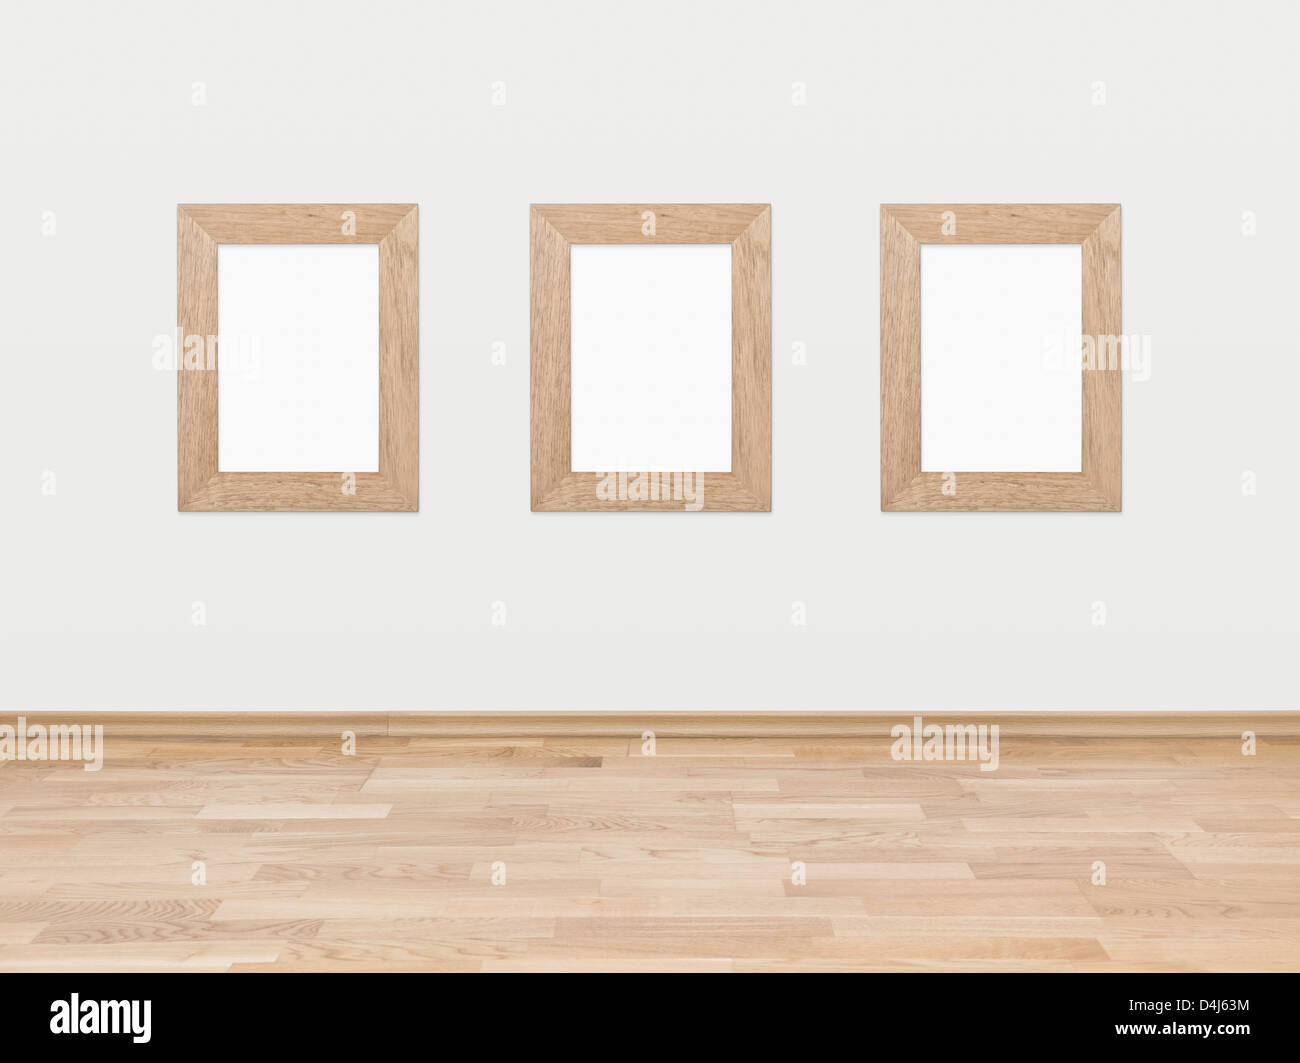 Trois cadres en bois rectangulaire vide affichée sur un mur blanc au-dessus d'un plancher en bois feuillus. Banque D'Images